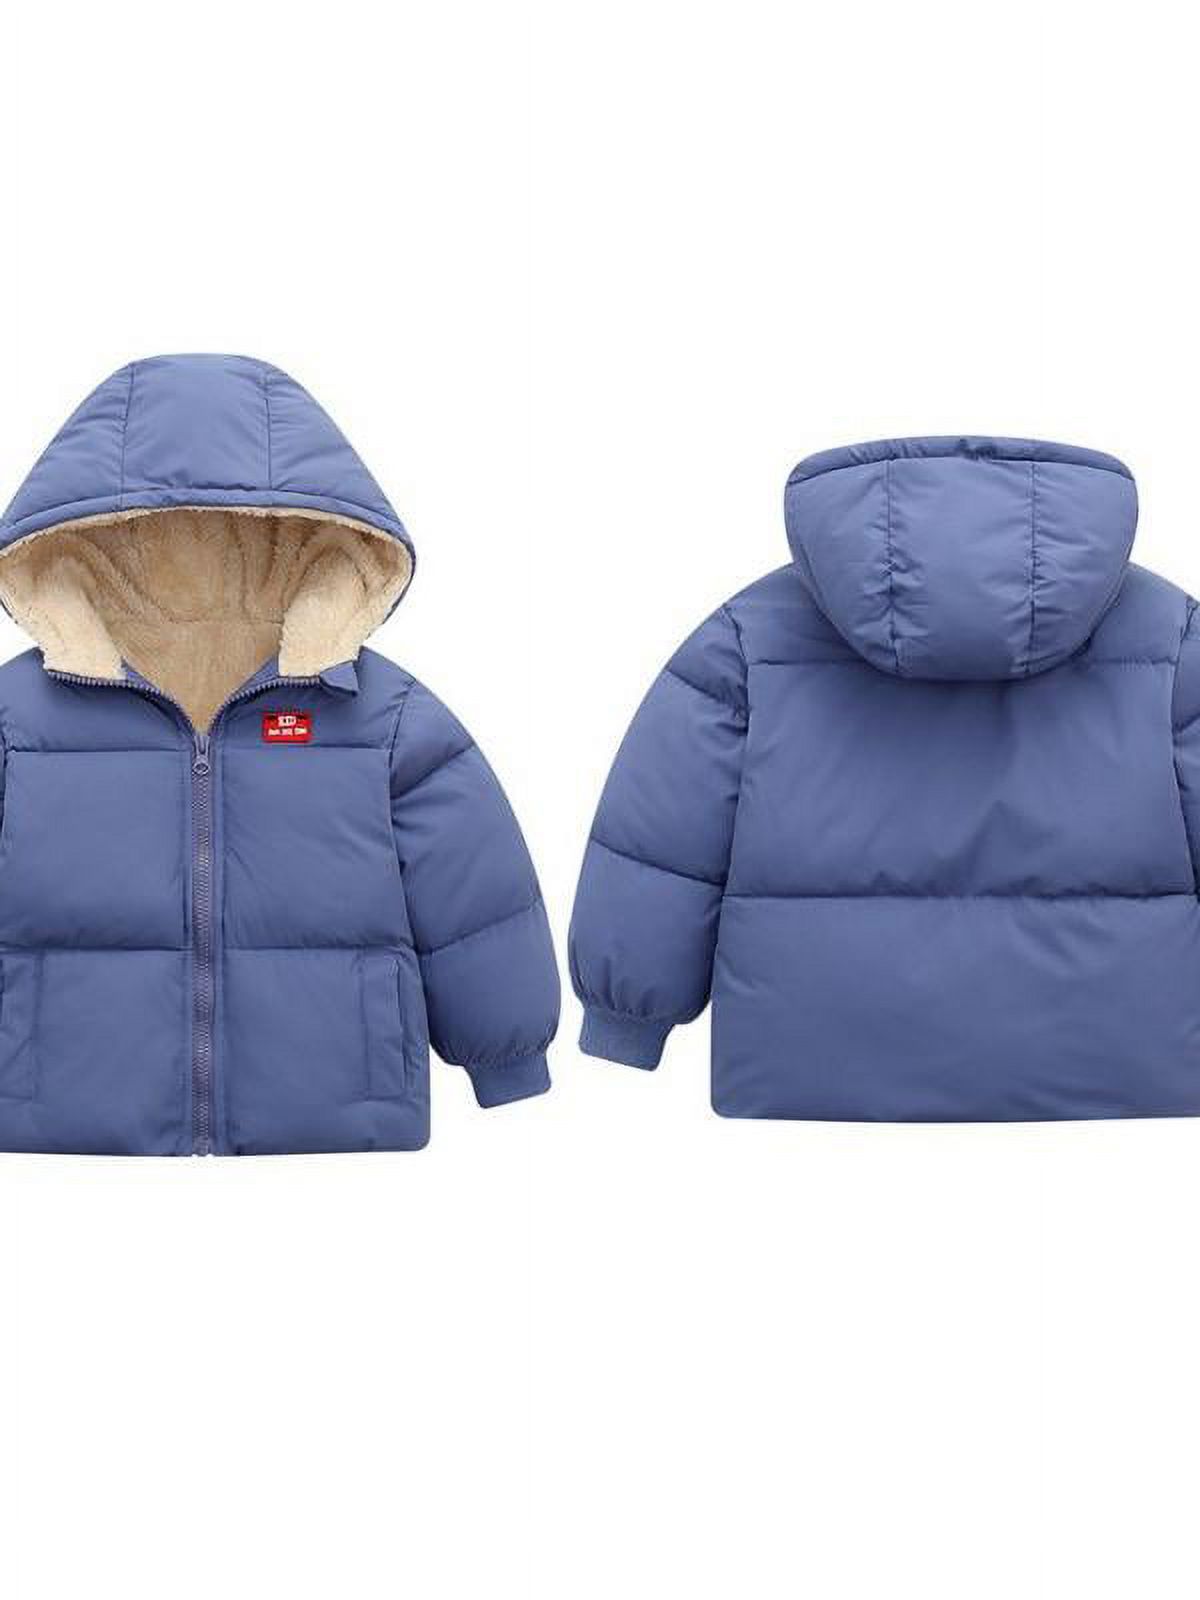 Topumt Boys Girls Hooded Down Jacket Winter Warm Fleece Coat Windproof Zipper Puffer Outerwear 1T-6T - image 3 of 3